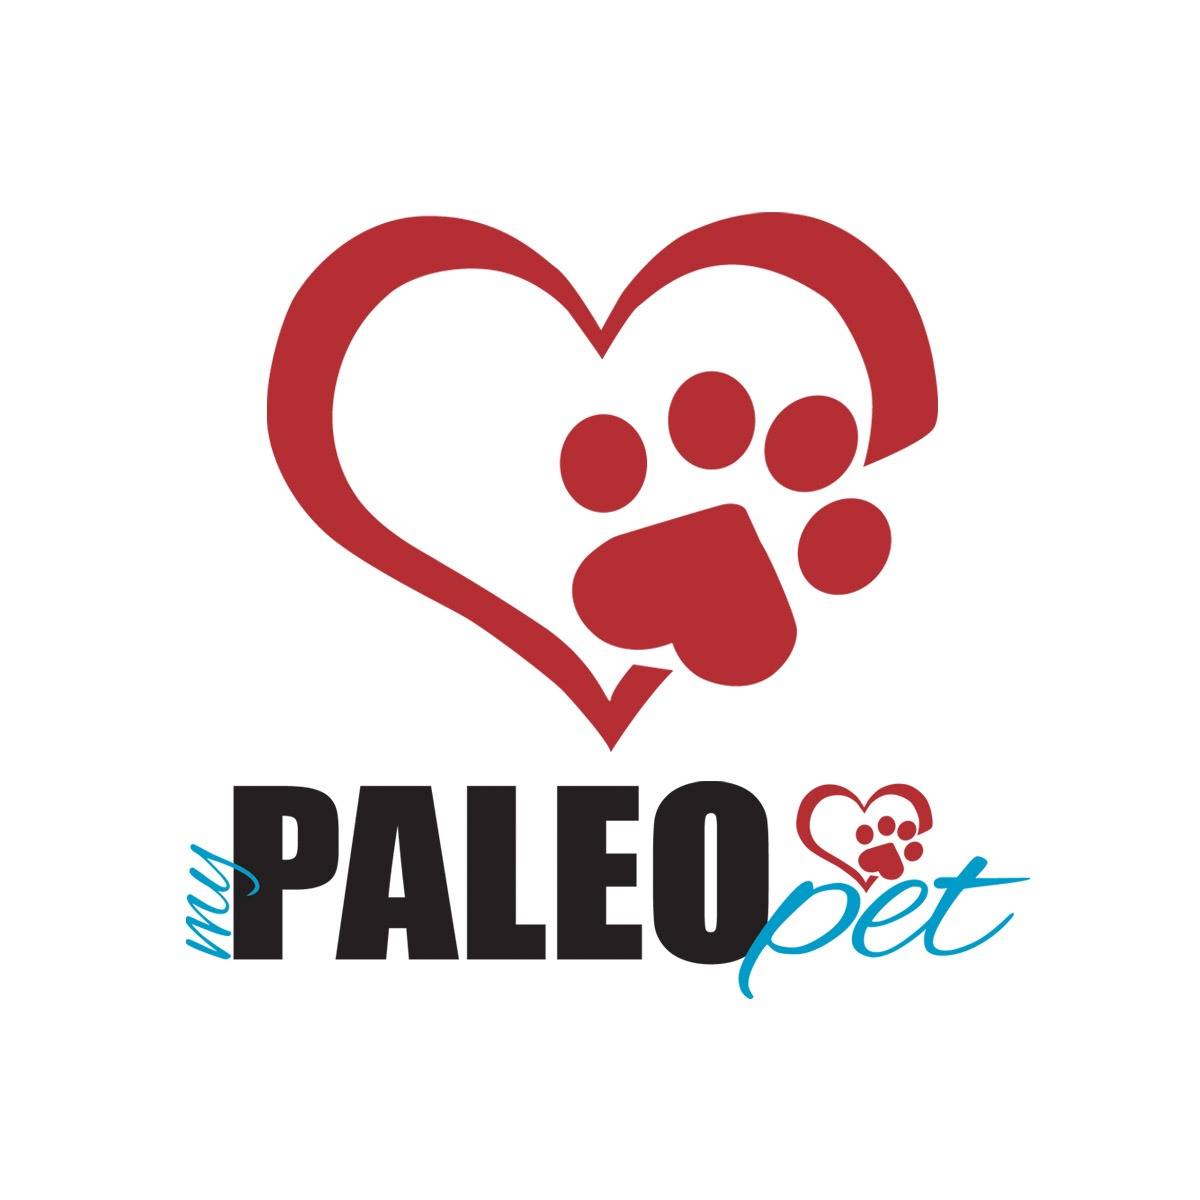 Company logo of My Paleo Pet